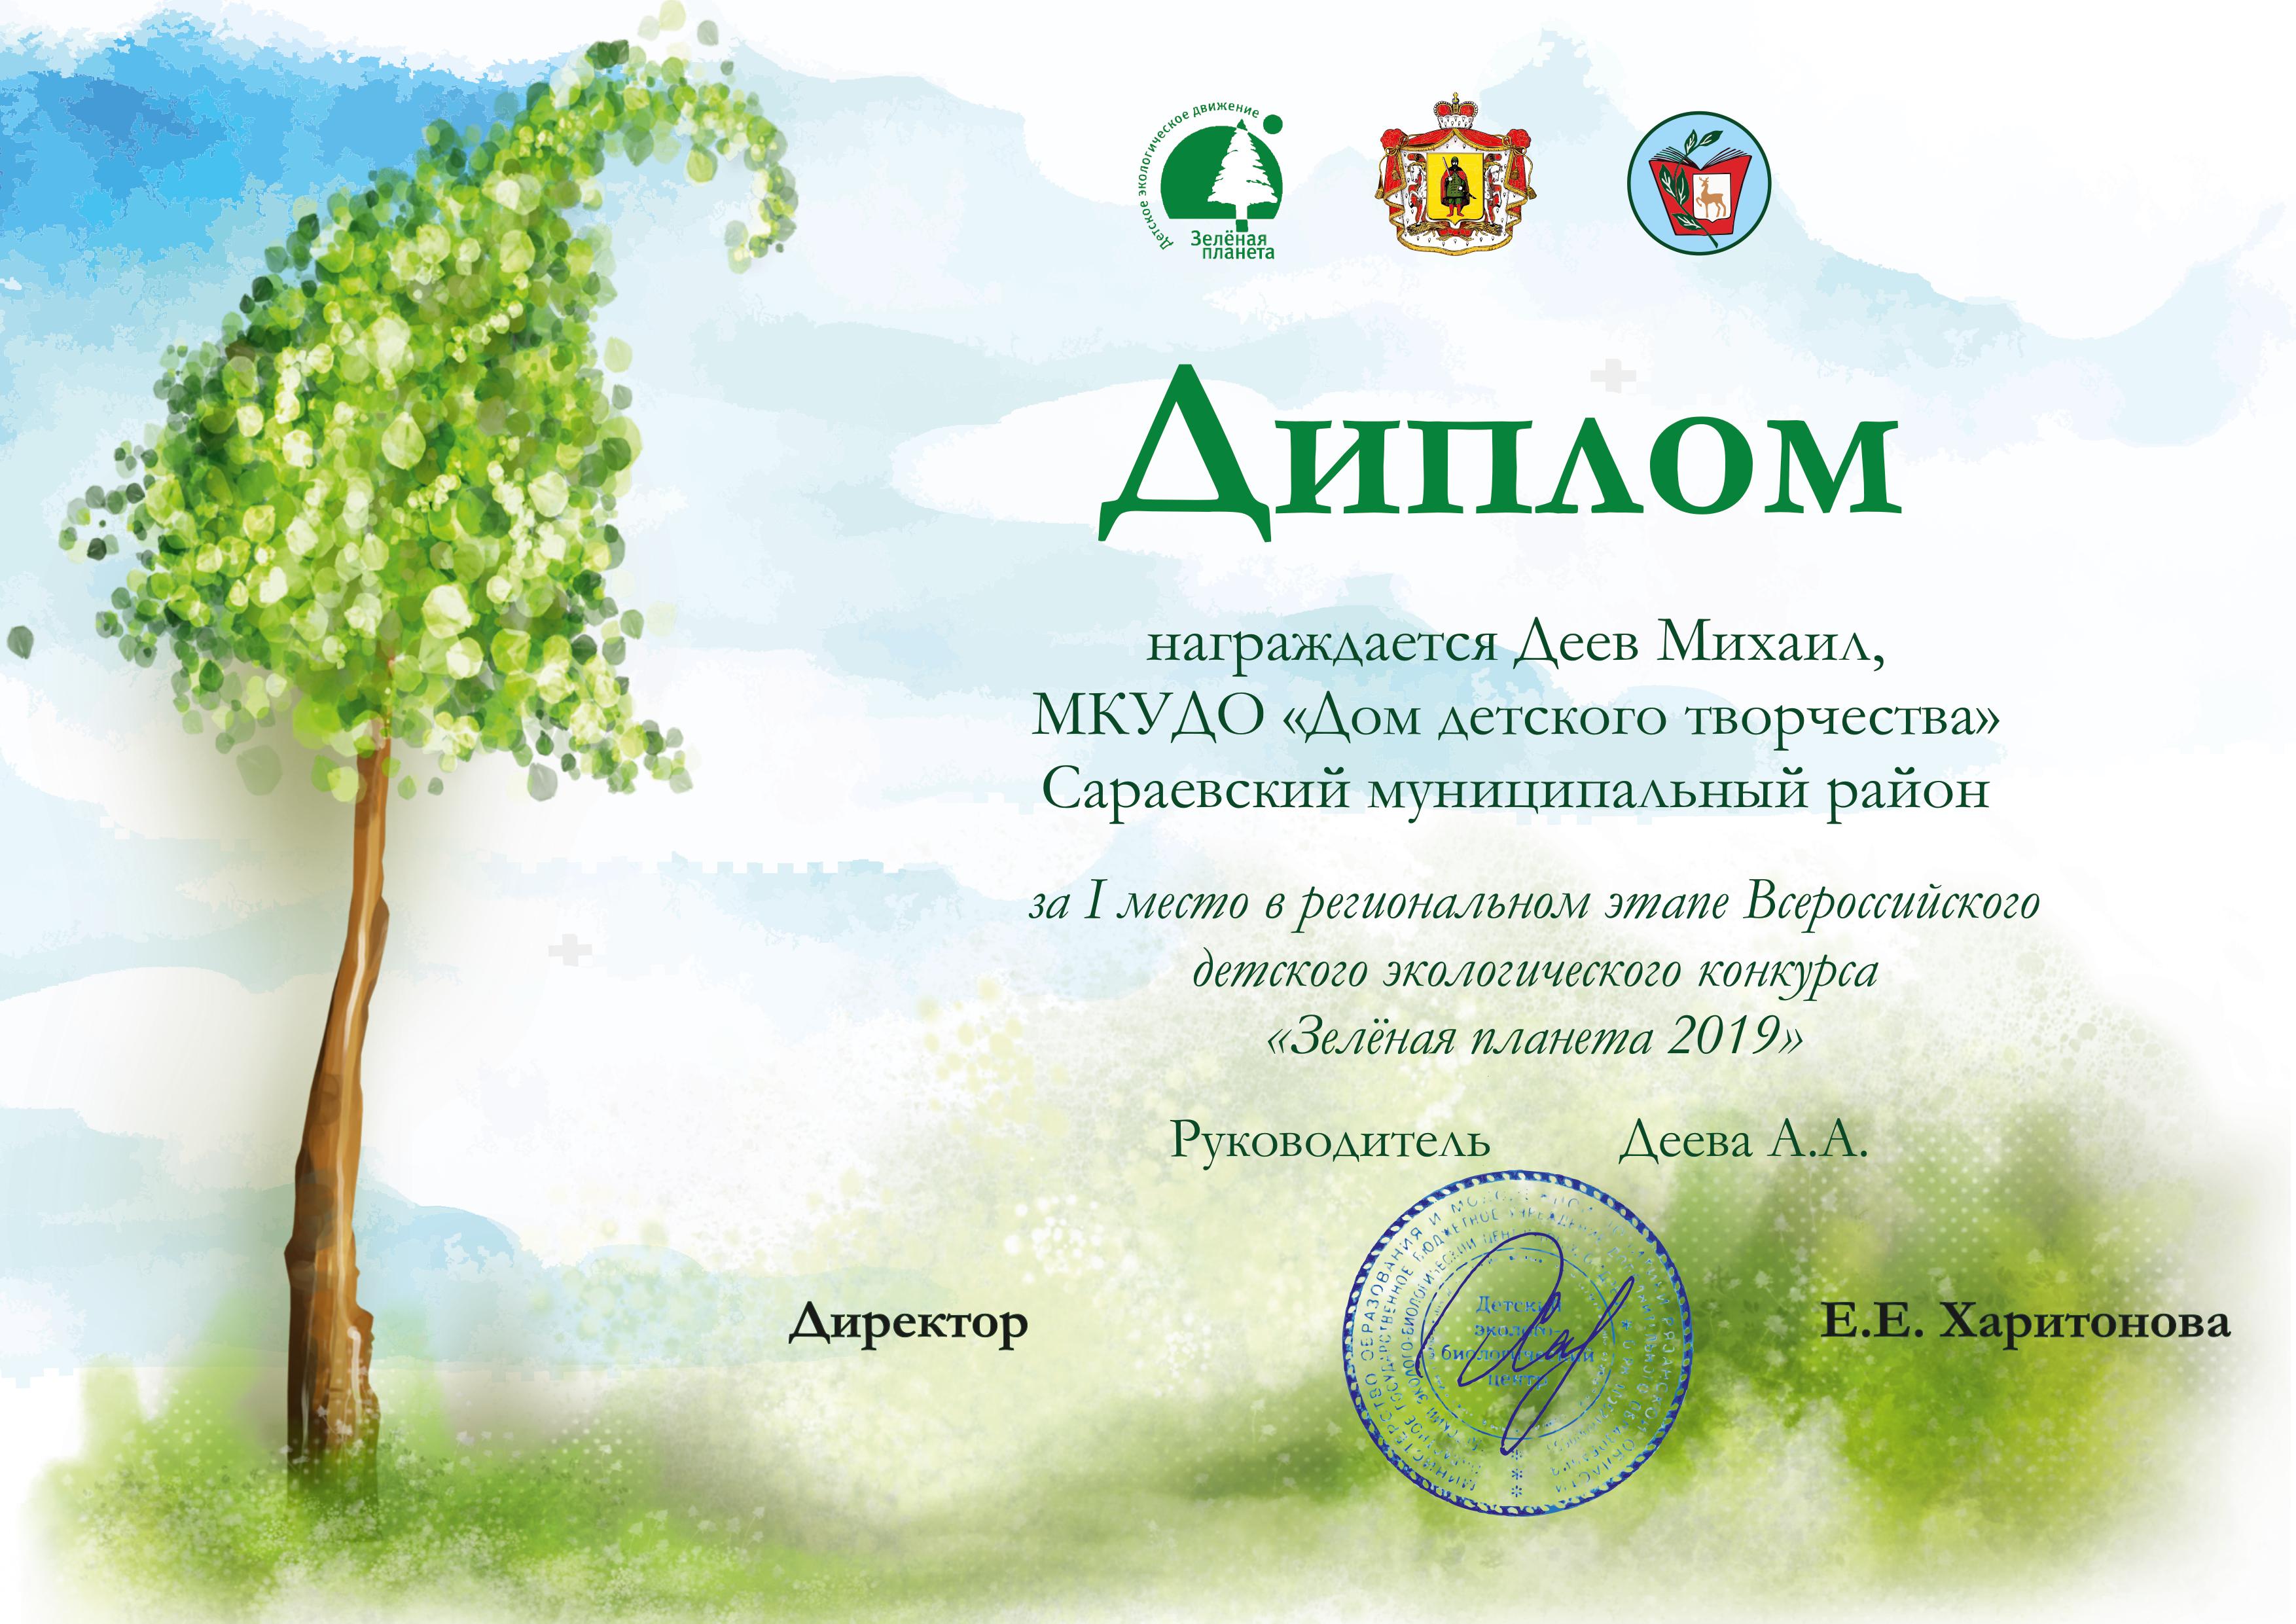 Детский экологический конкурс "Зелёная планета 2019"